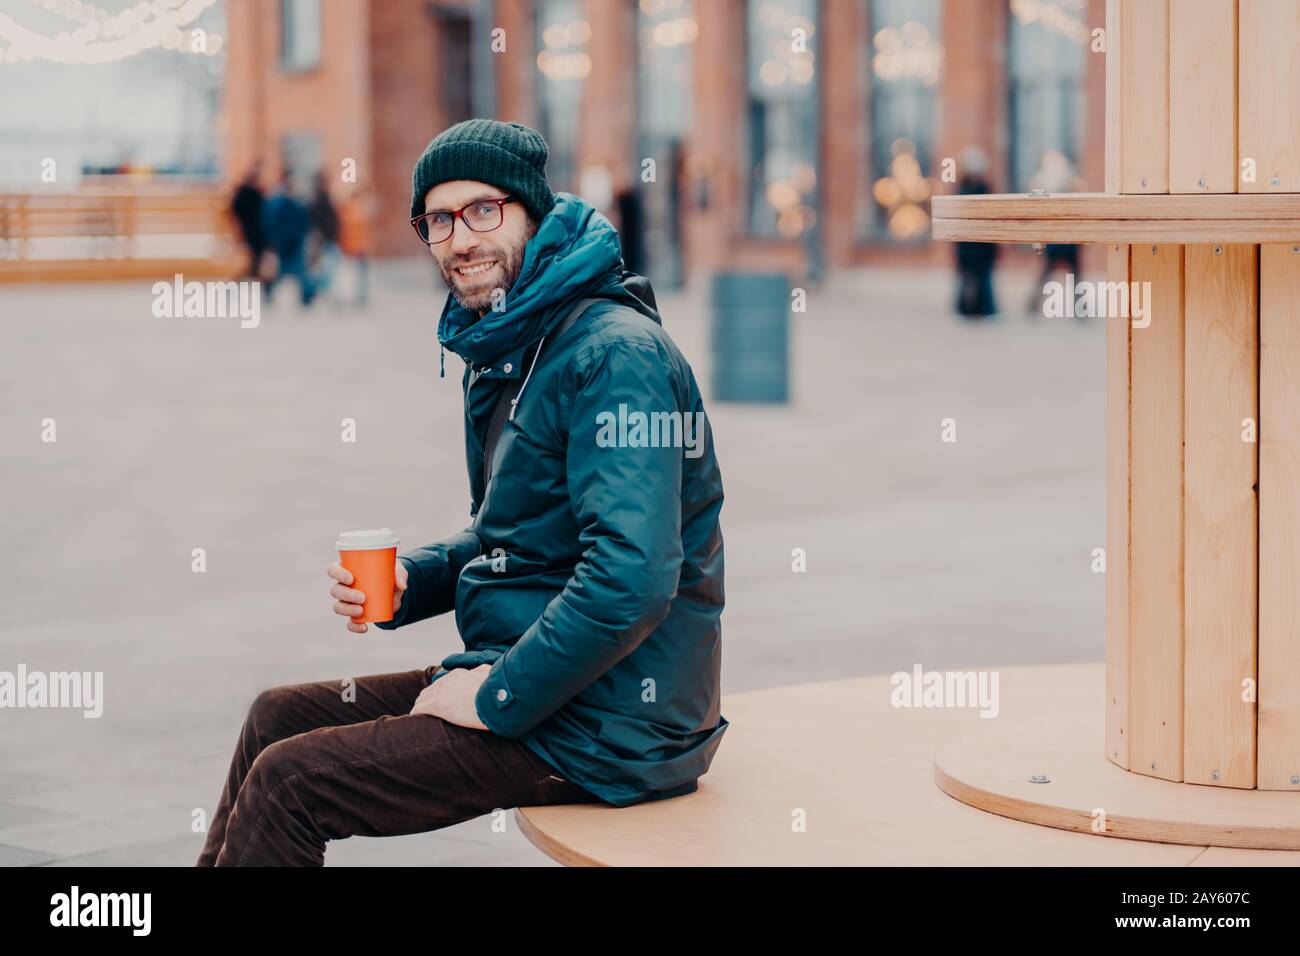 Horizontaler Blick auf den fröhlichen europäischen Mann mit dicken Borsten, trägt Hut und Jacke, hält Einwegbecher Kaffee, atmet frische Luft, posiert auf der Straße Stockfoto